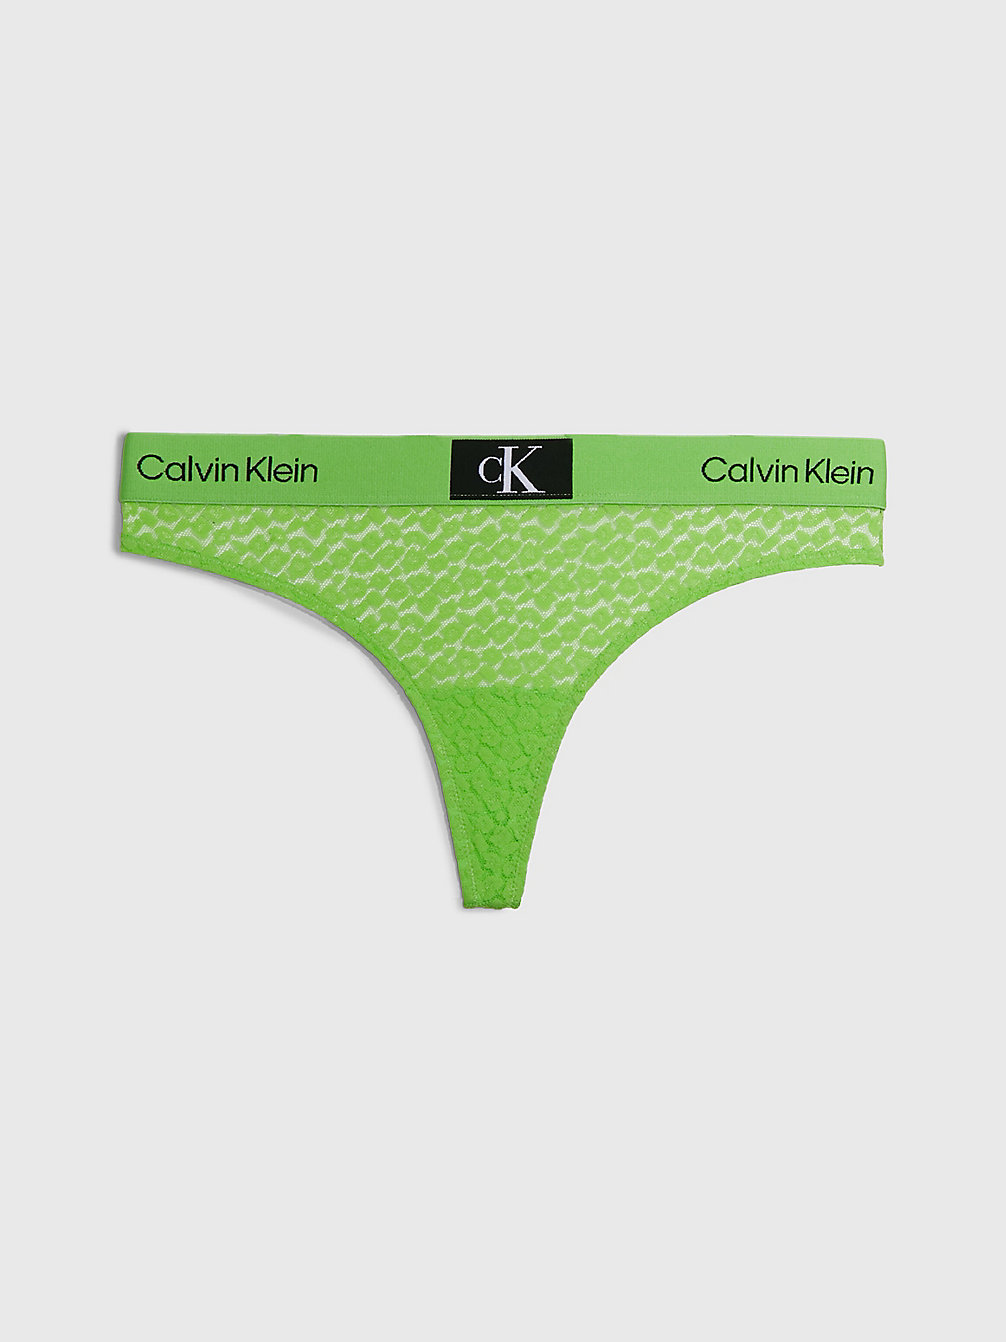 FABULOUS GREEN String En Dentelle - Ck96 undefined femmes Calvin Klein